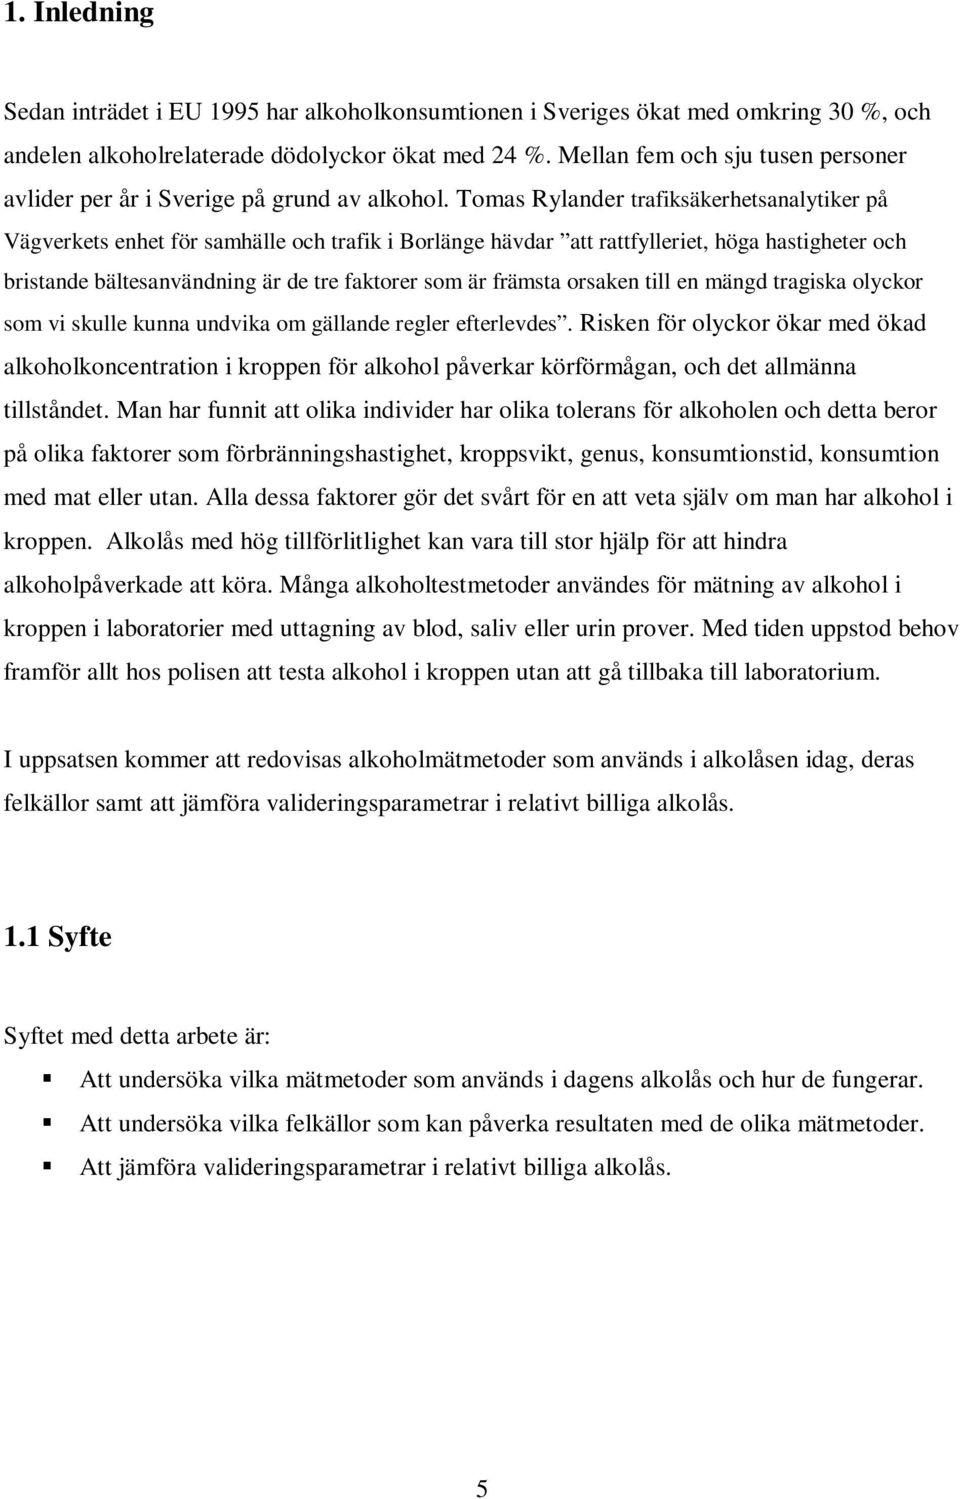 Tomas Rylander trafiksäkerhetsanalytiker på Vägverkets enhet för samhälle och trafik i Borlänge hävdar att rattfylleriet, höga hastigheter och bristande bältesanvändning är de tre faktorer som är